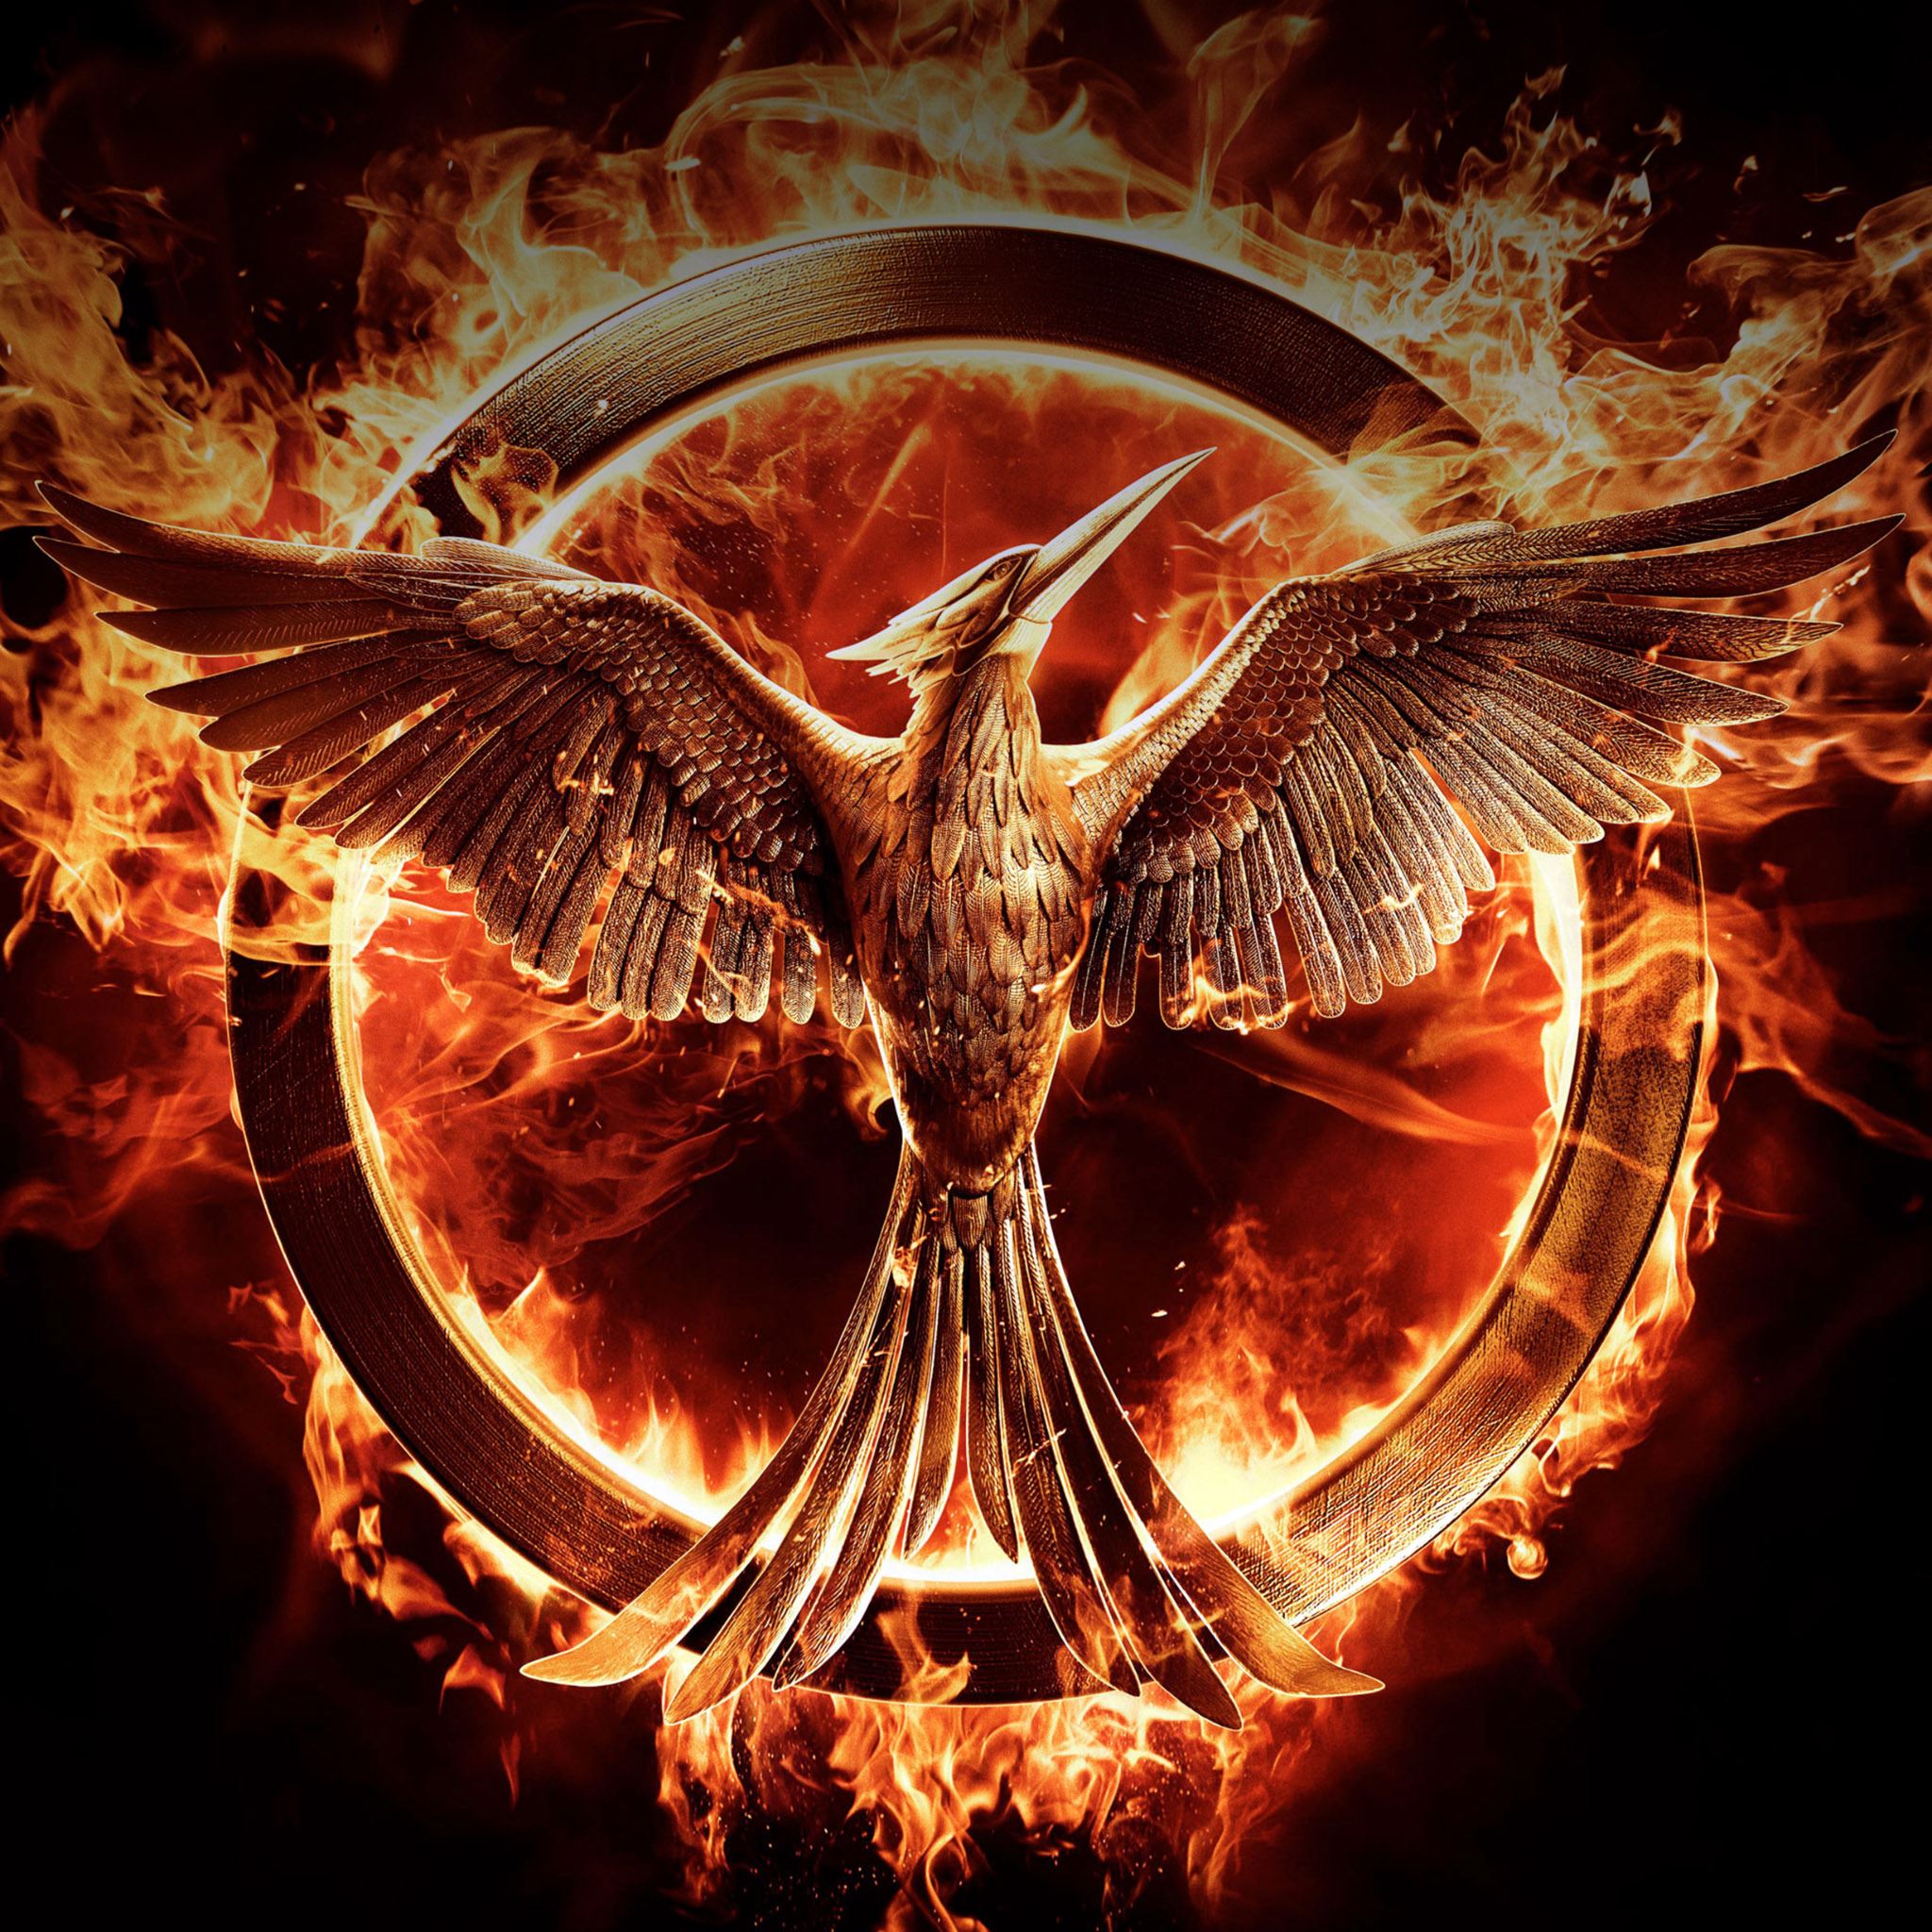 Hunger Games Fire iPad Air wallpaper 